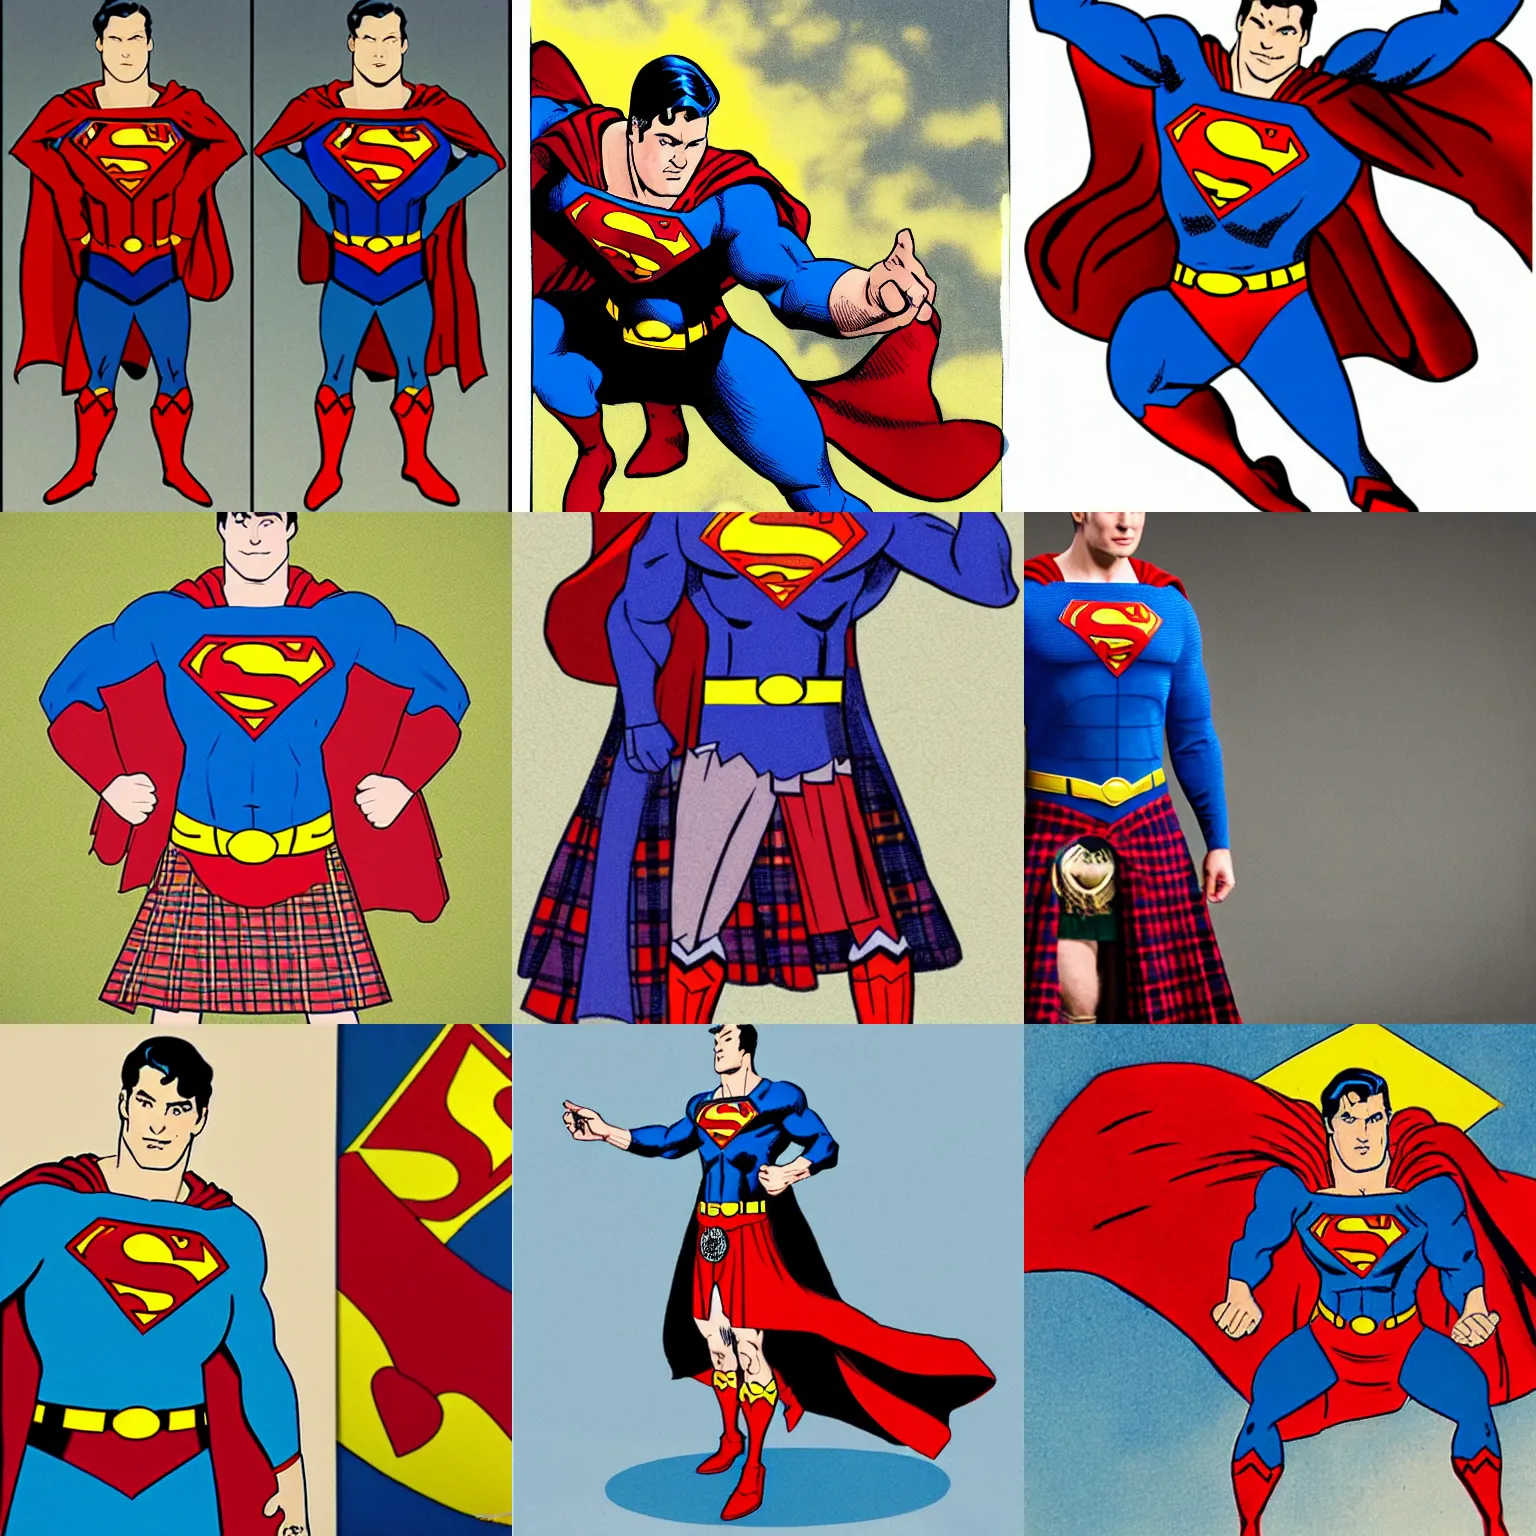 Prompt: Superman in a traditional tartan Scottish kilt